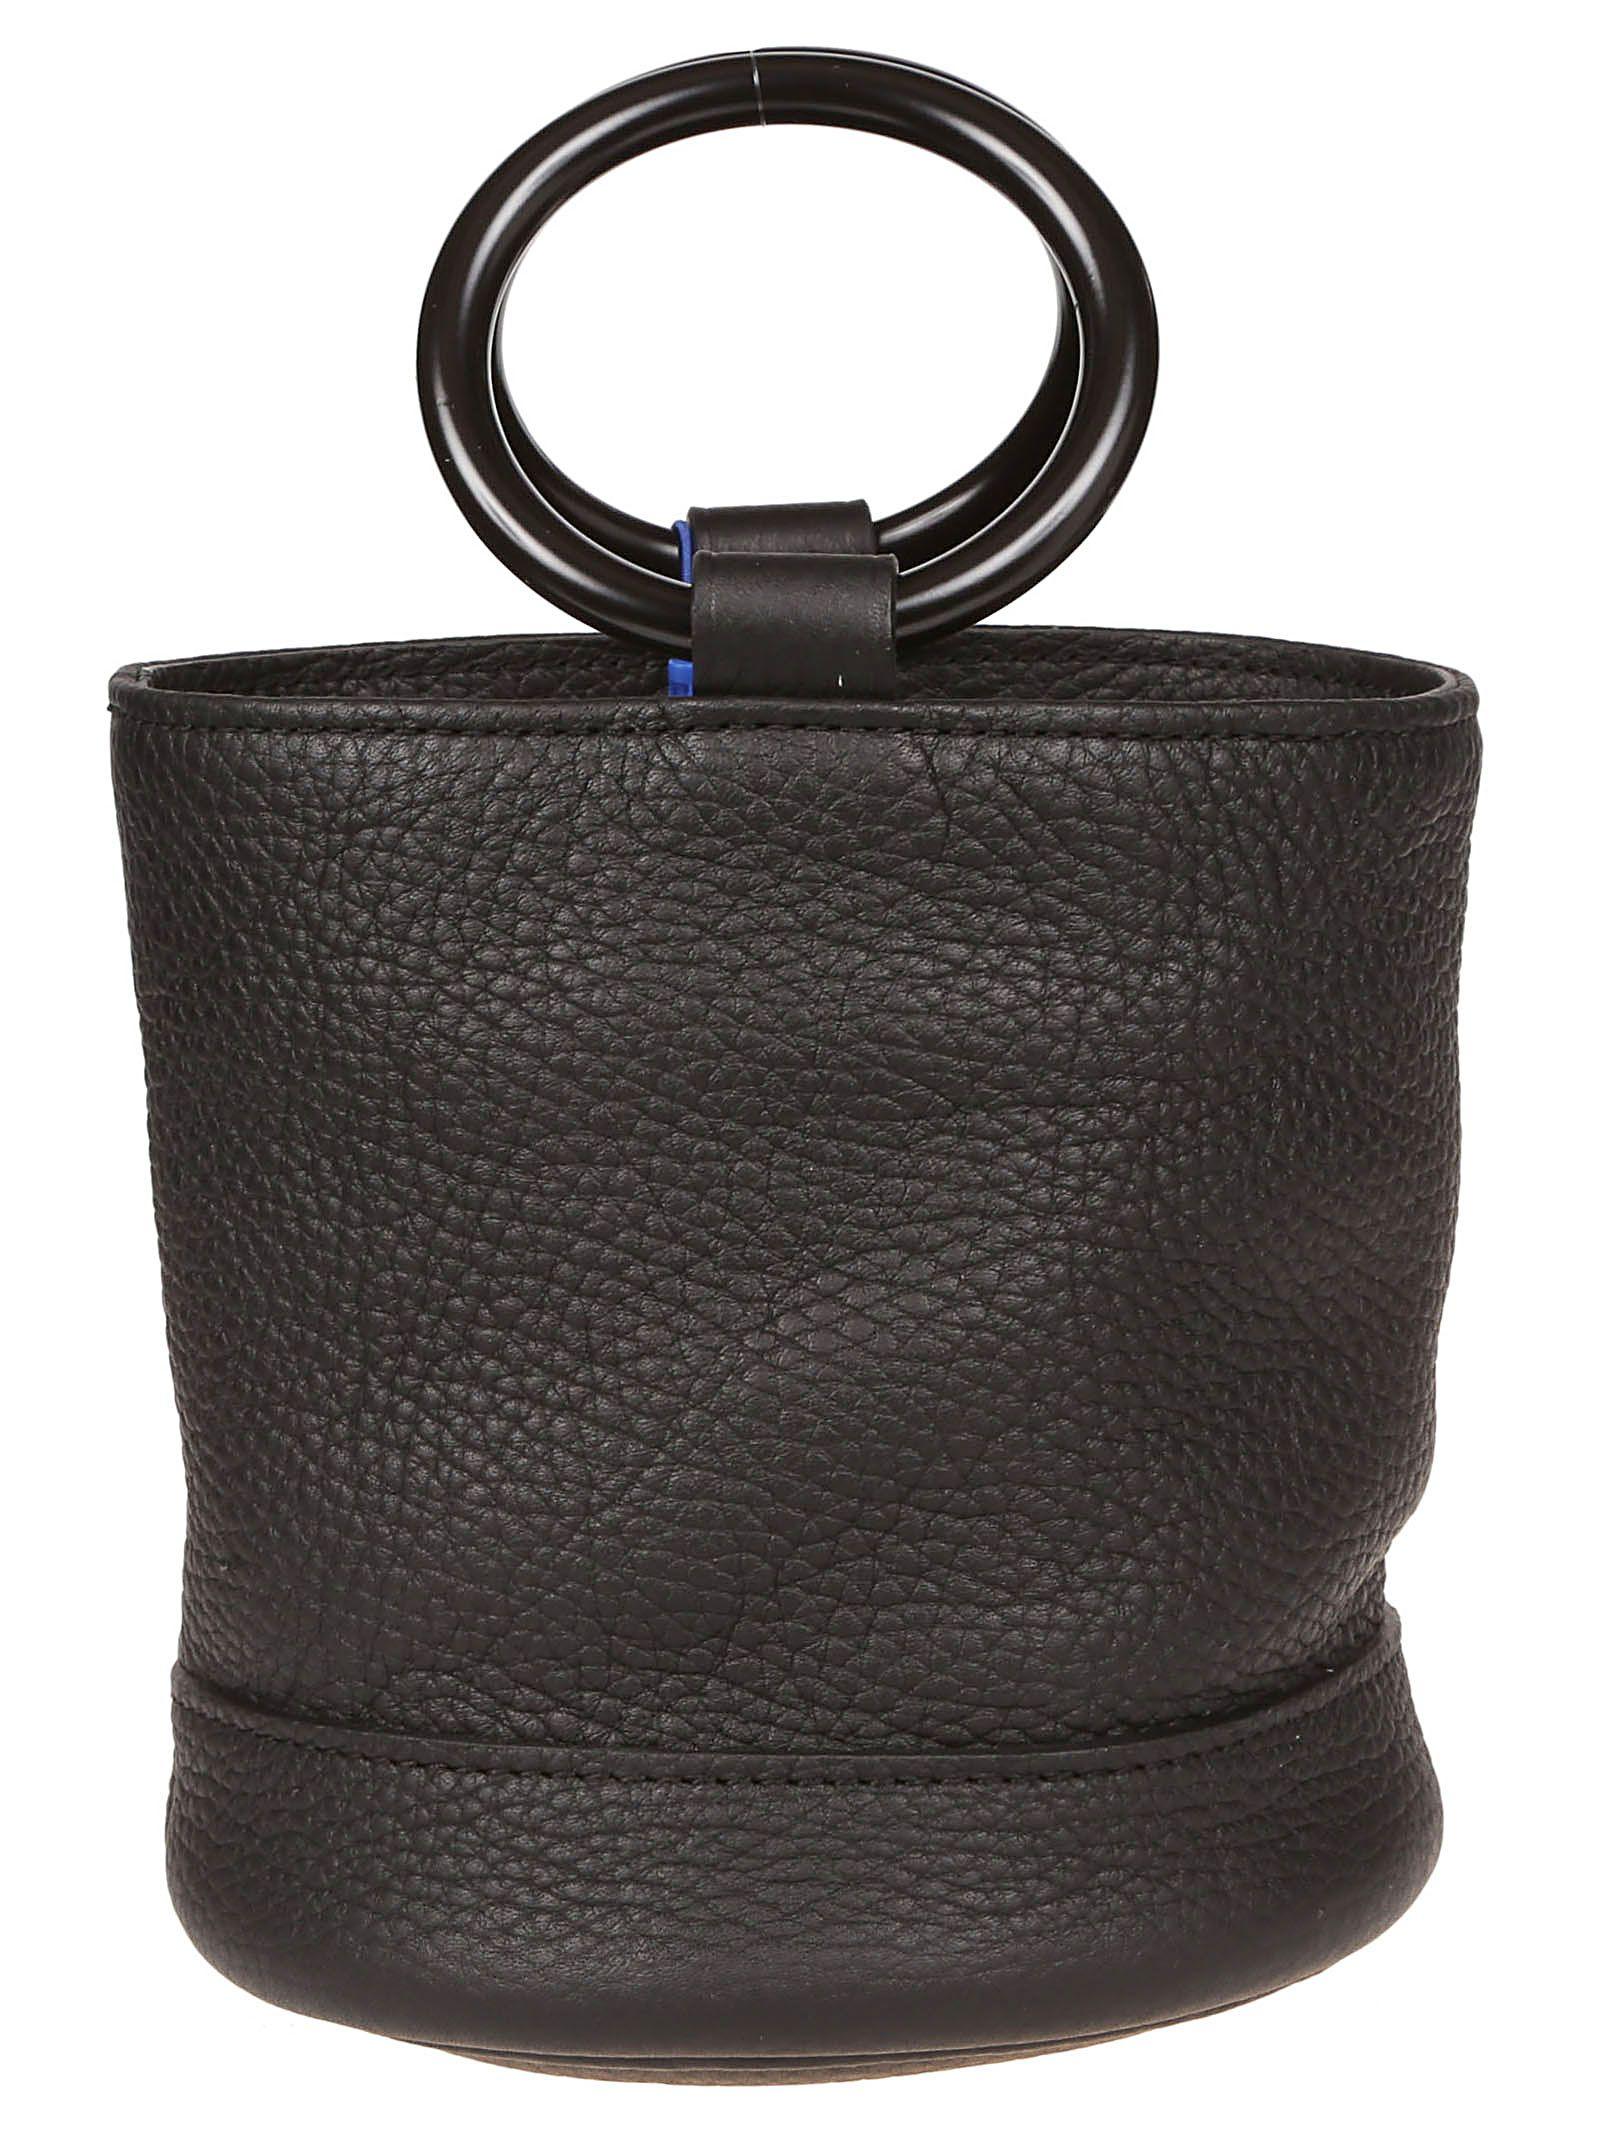 Simon Miller Black Leather Handbag - Lyst